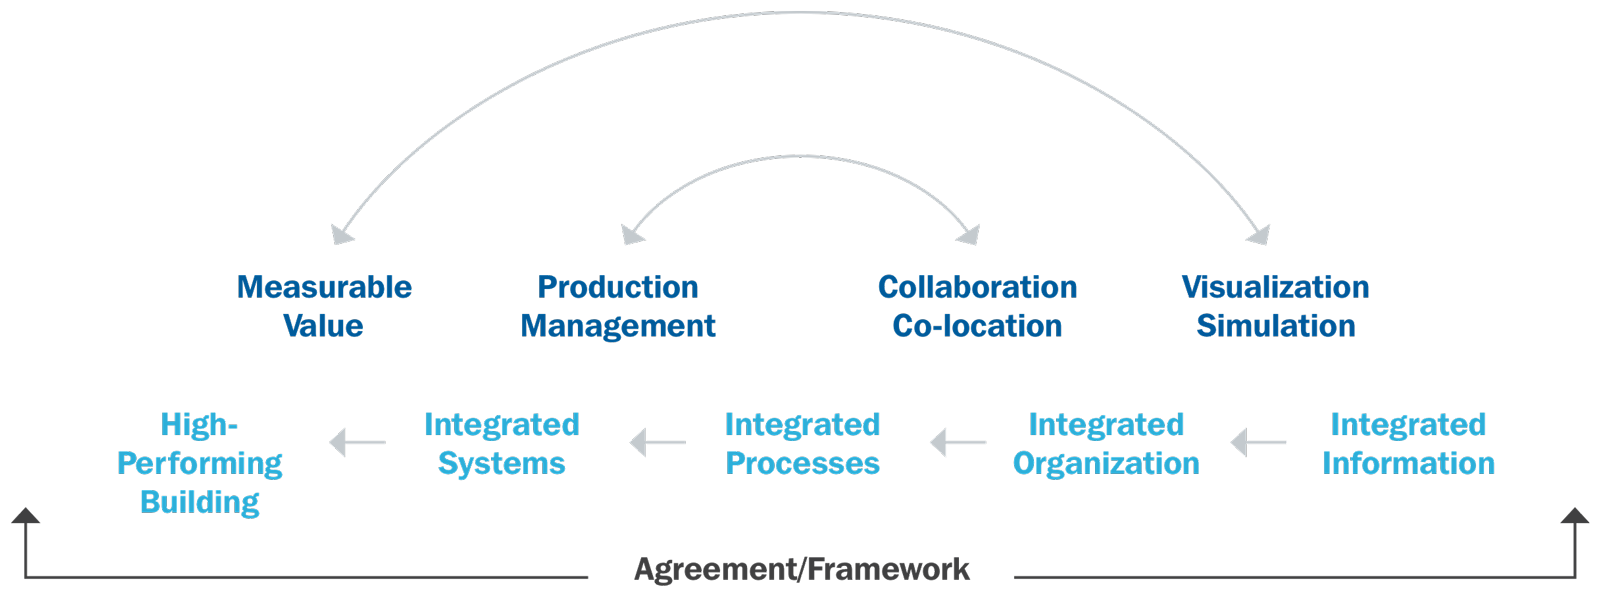 IPD Agreement Framework illustration